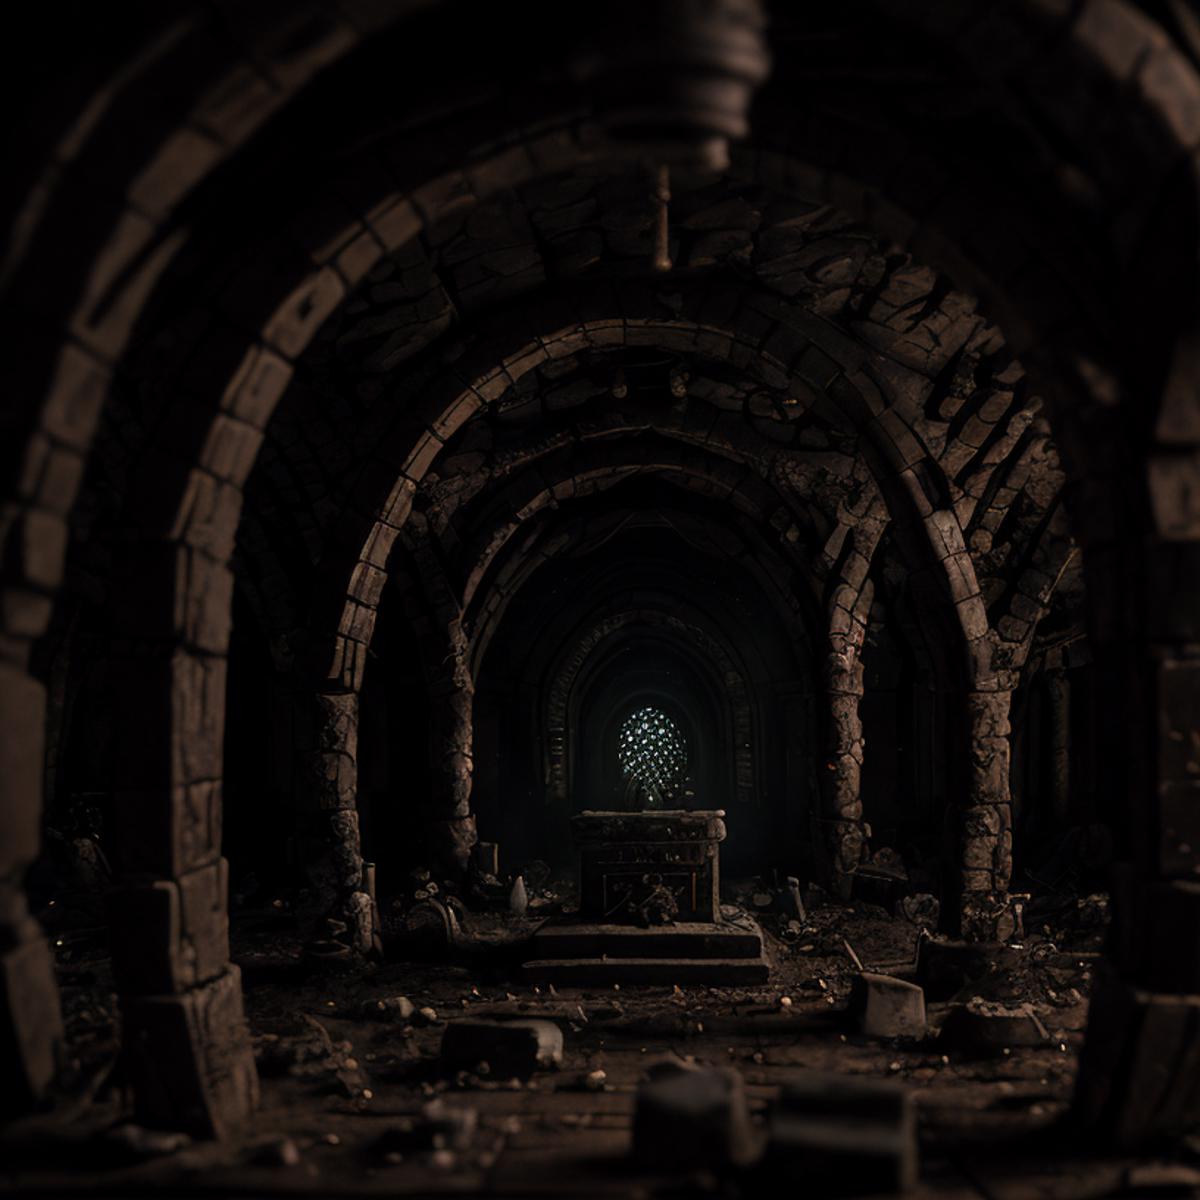 Fantasy Underground image by ericheisner650